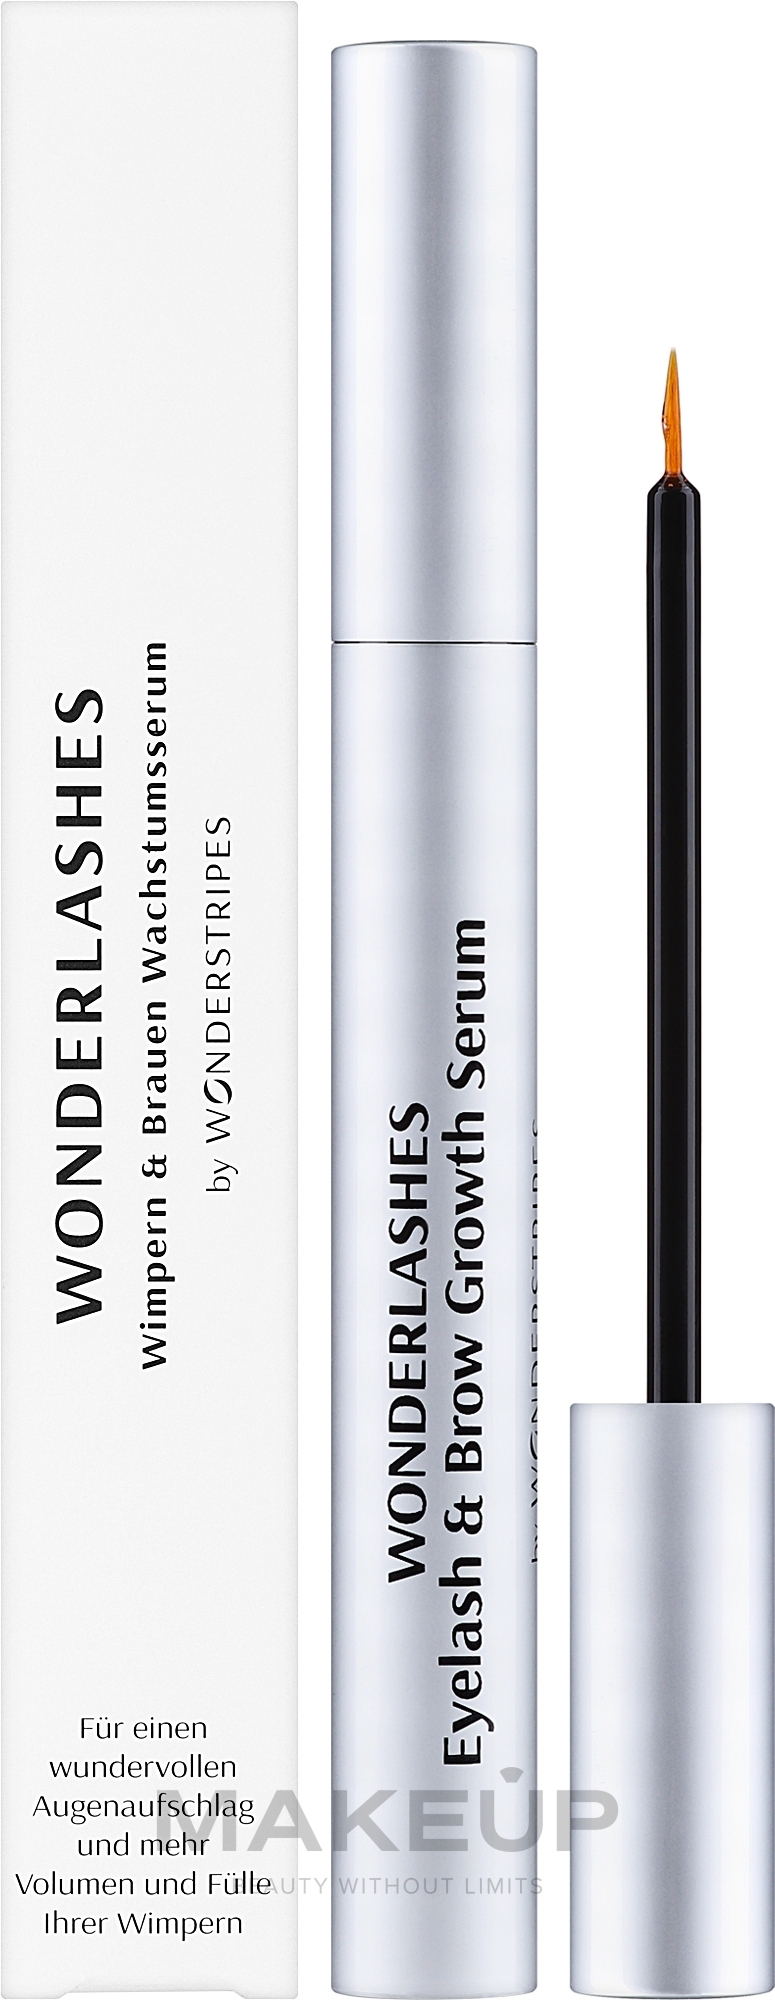 Serum na porost rzęs i brwi - Wonderstripes Eyelash & Eyebrow Growth Serum — Zdjęcie 3 ml